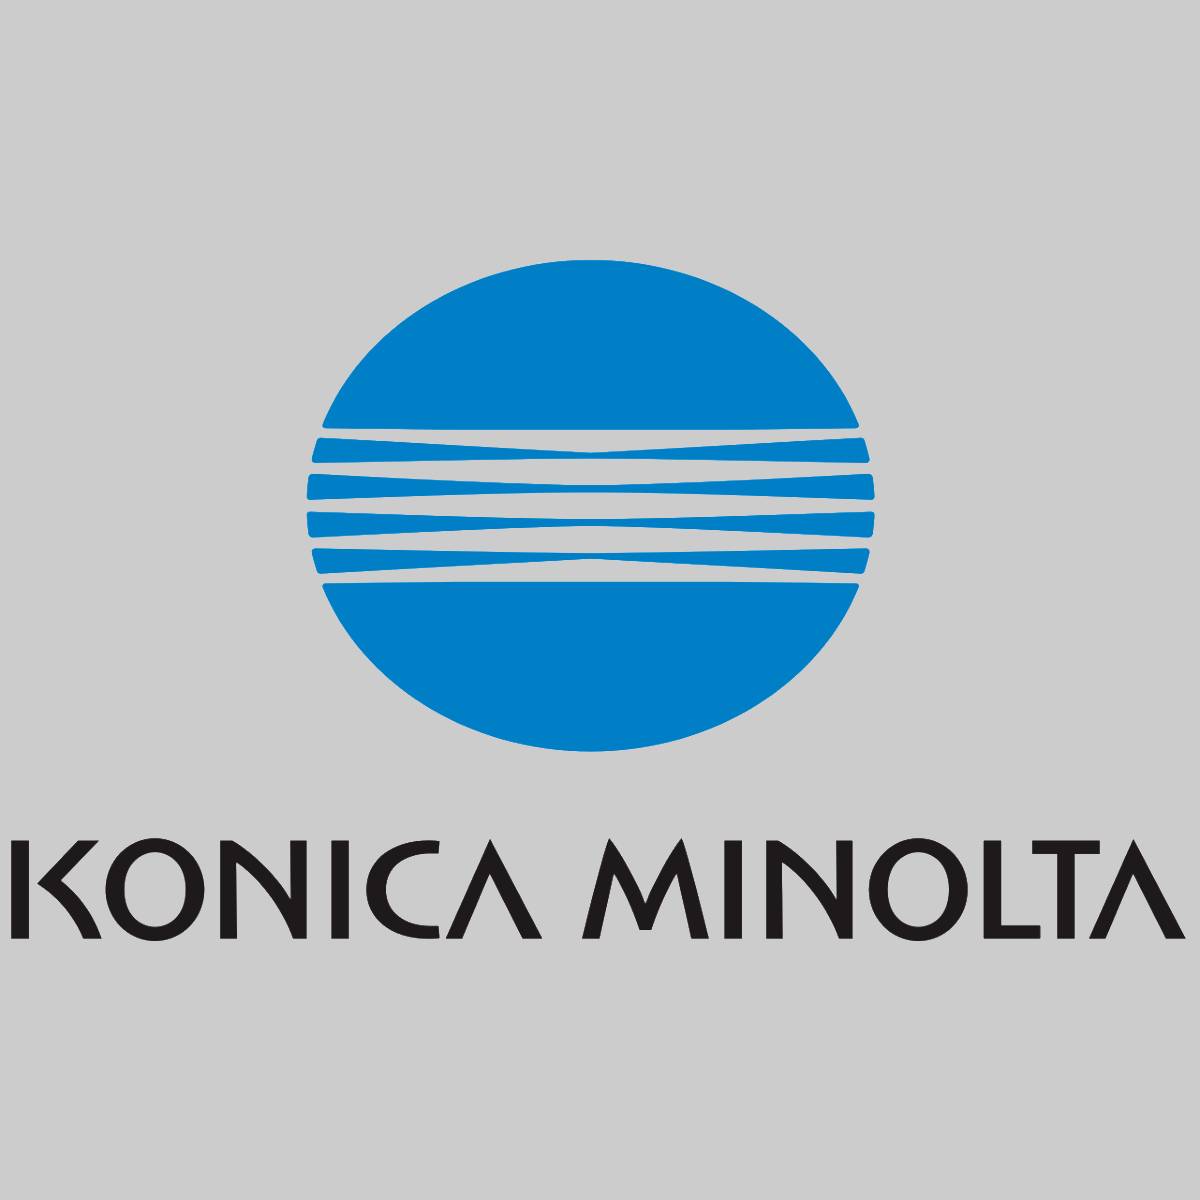 "Toner d'origine Konica Minolta TN712 noir A3VU050 pour Bizhub 654 754 nouveau OVP